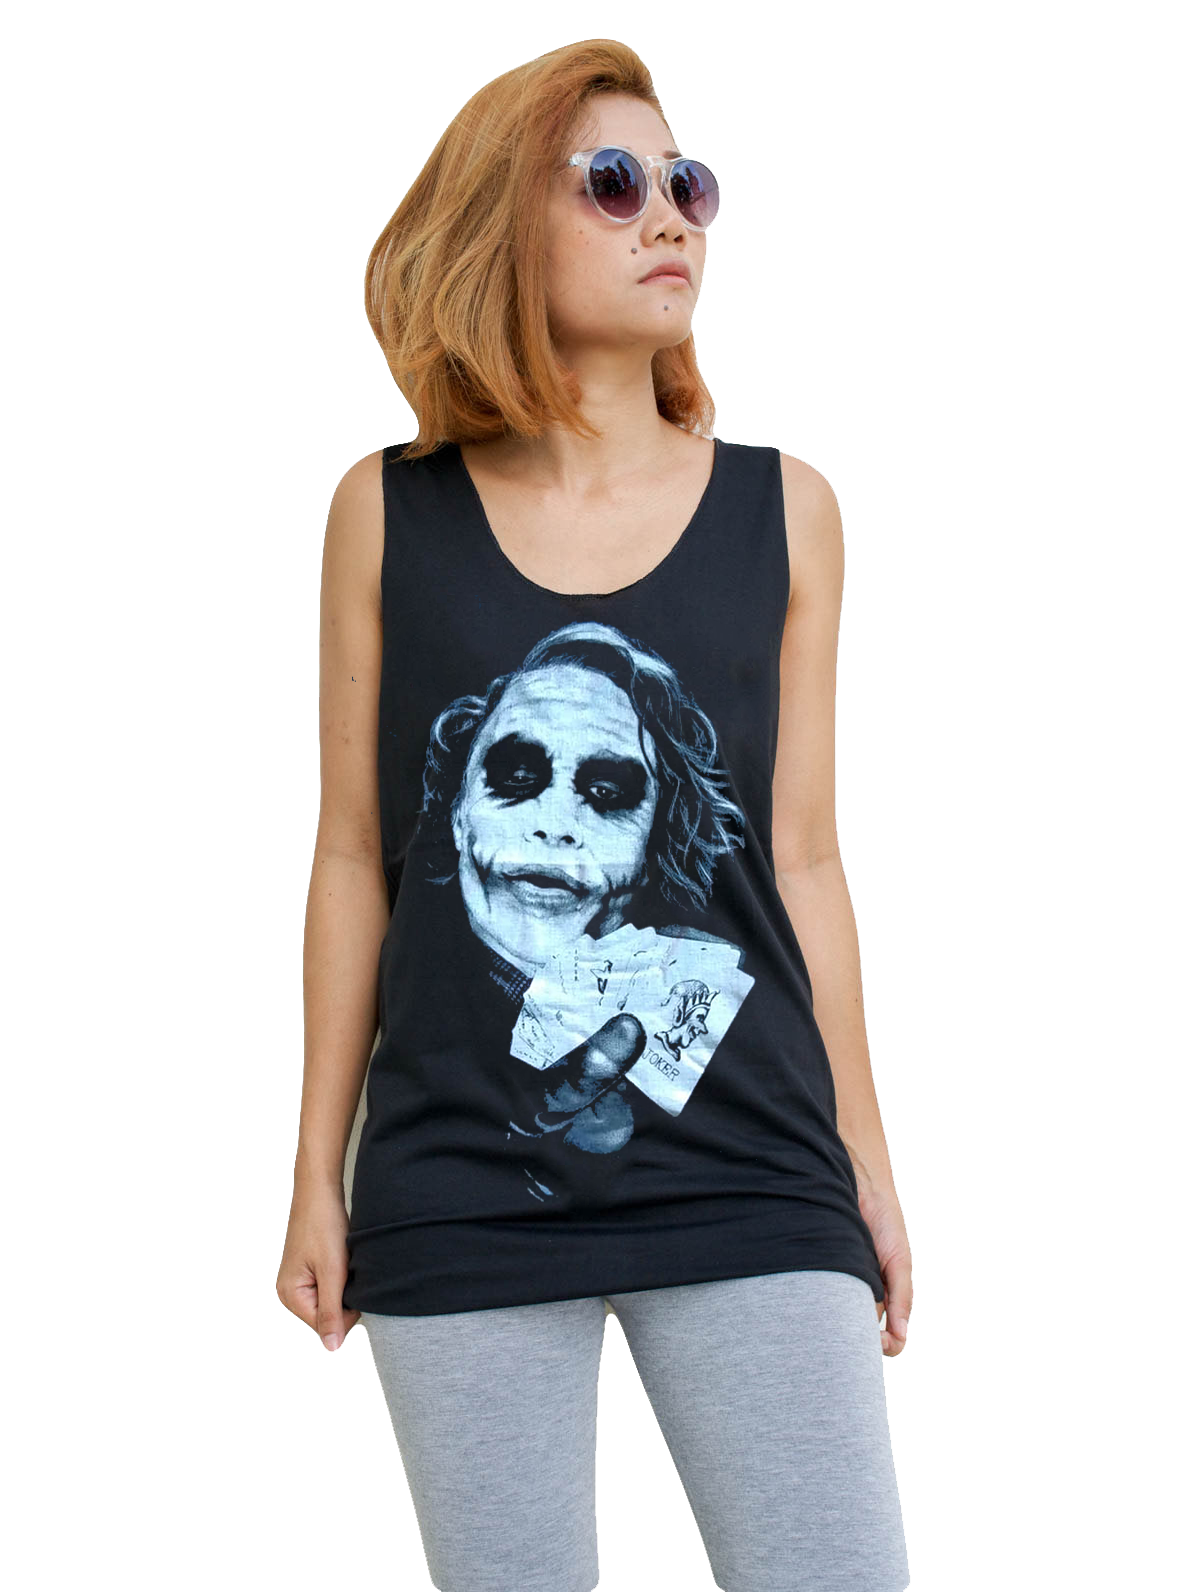 Unisex The Joker Heath Ledger Tank-Top Singlet vest Sleeveless T-shirt